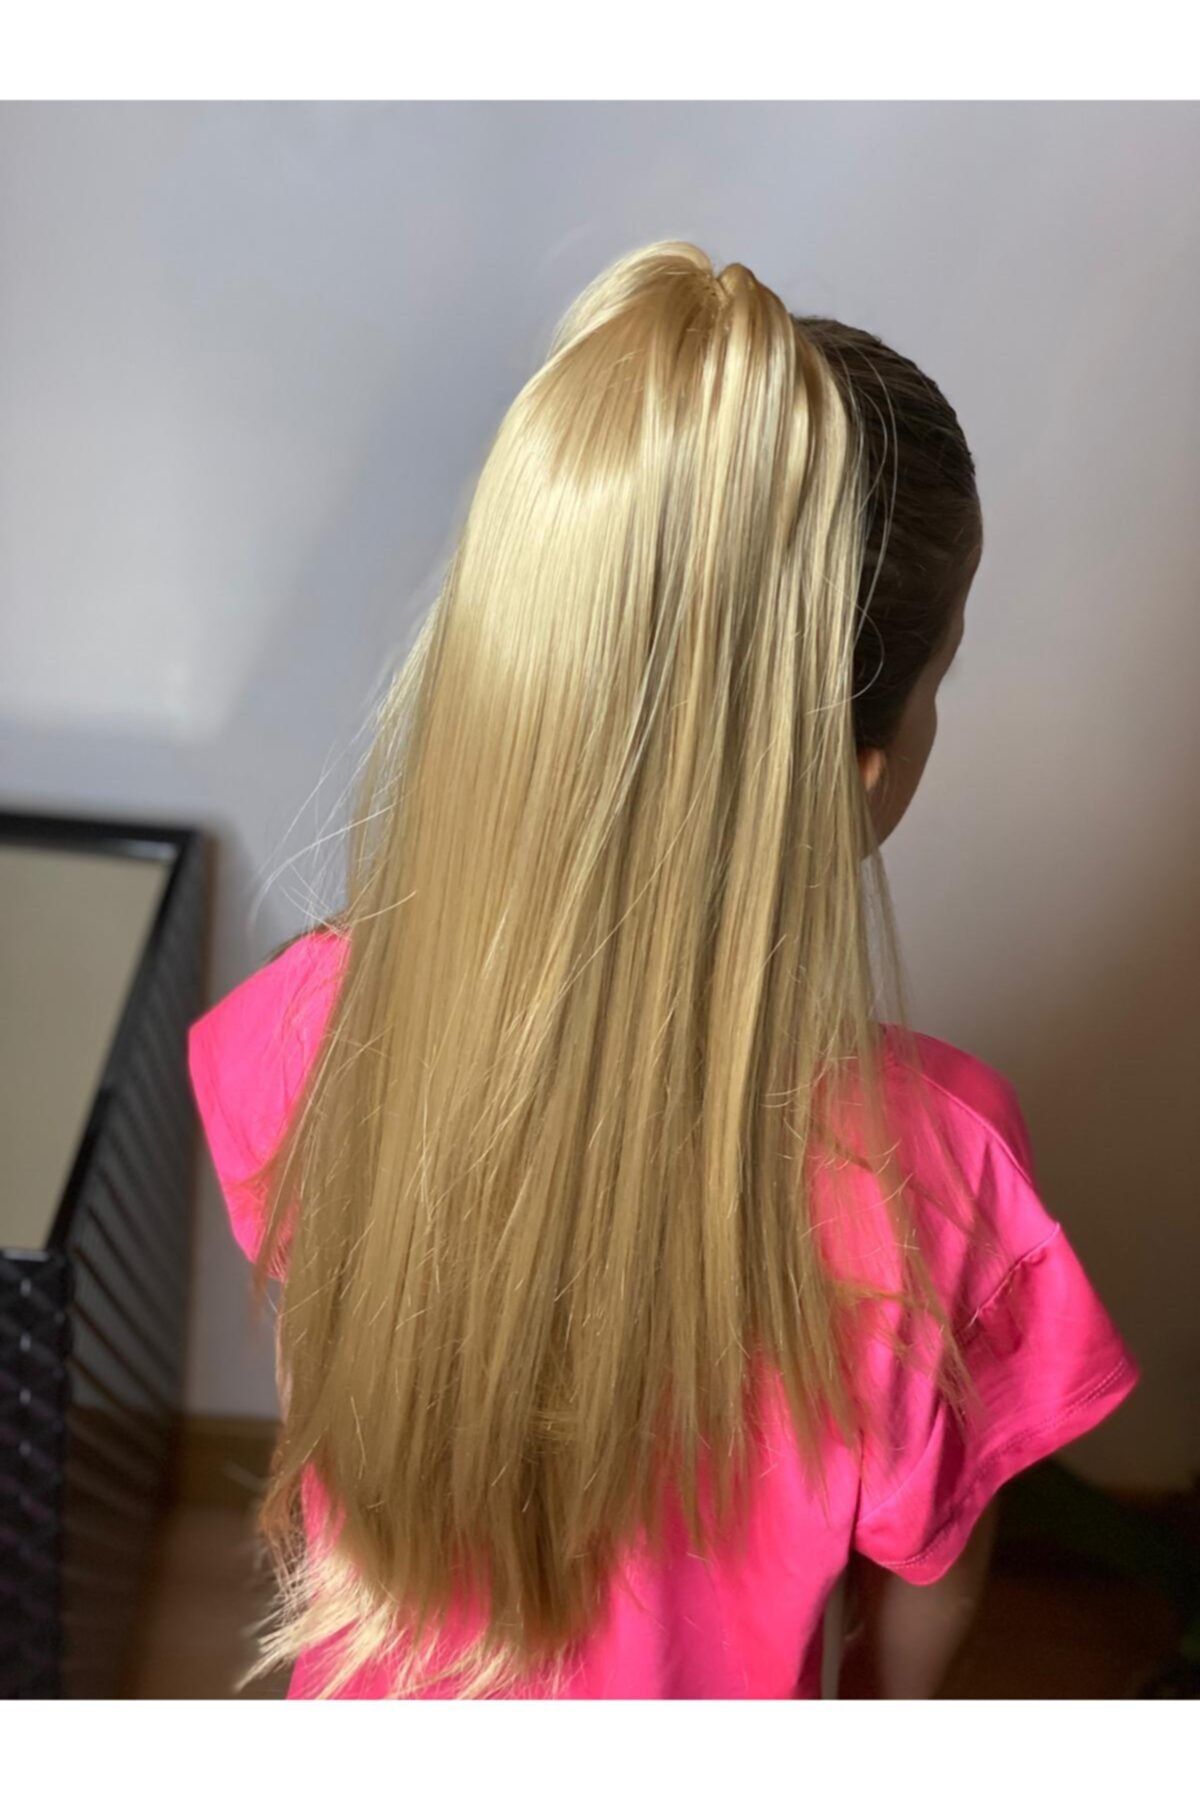 QUEEN AKSESUAR Doğal Uzun Açık Sarı Postiş Peruk Kaynak Yapay Takma Saç Toka Atkuyruğu Kadın Kız Çocuk Yetişkin